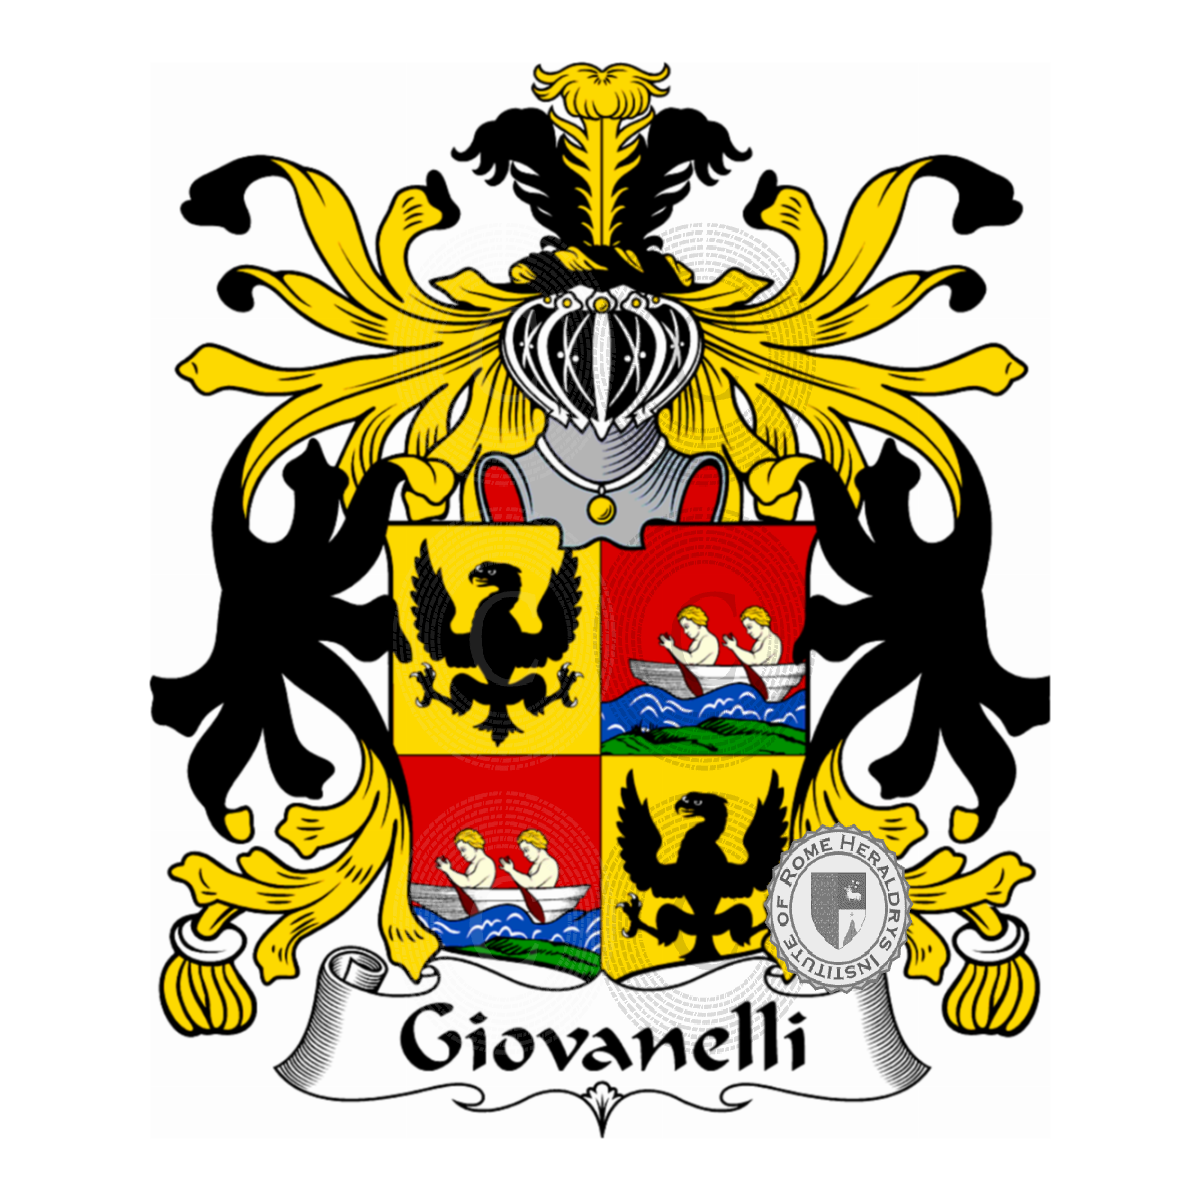 Stemma della famigliaGiovanelli, Giovanelli zu Gerstburg,Giovannelli